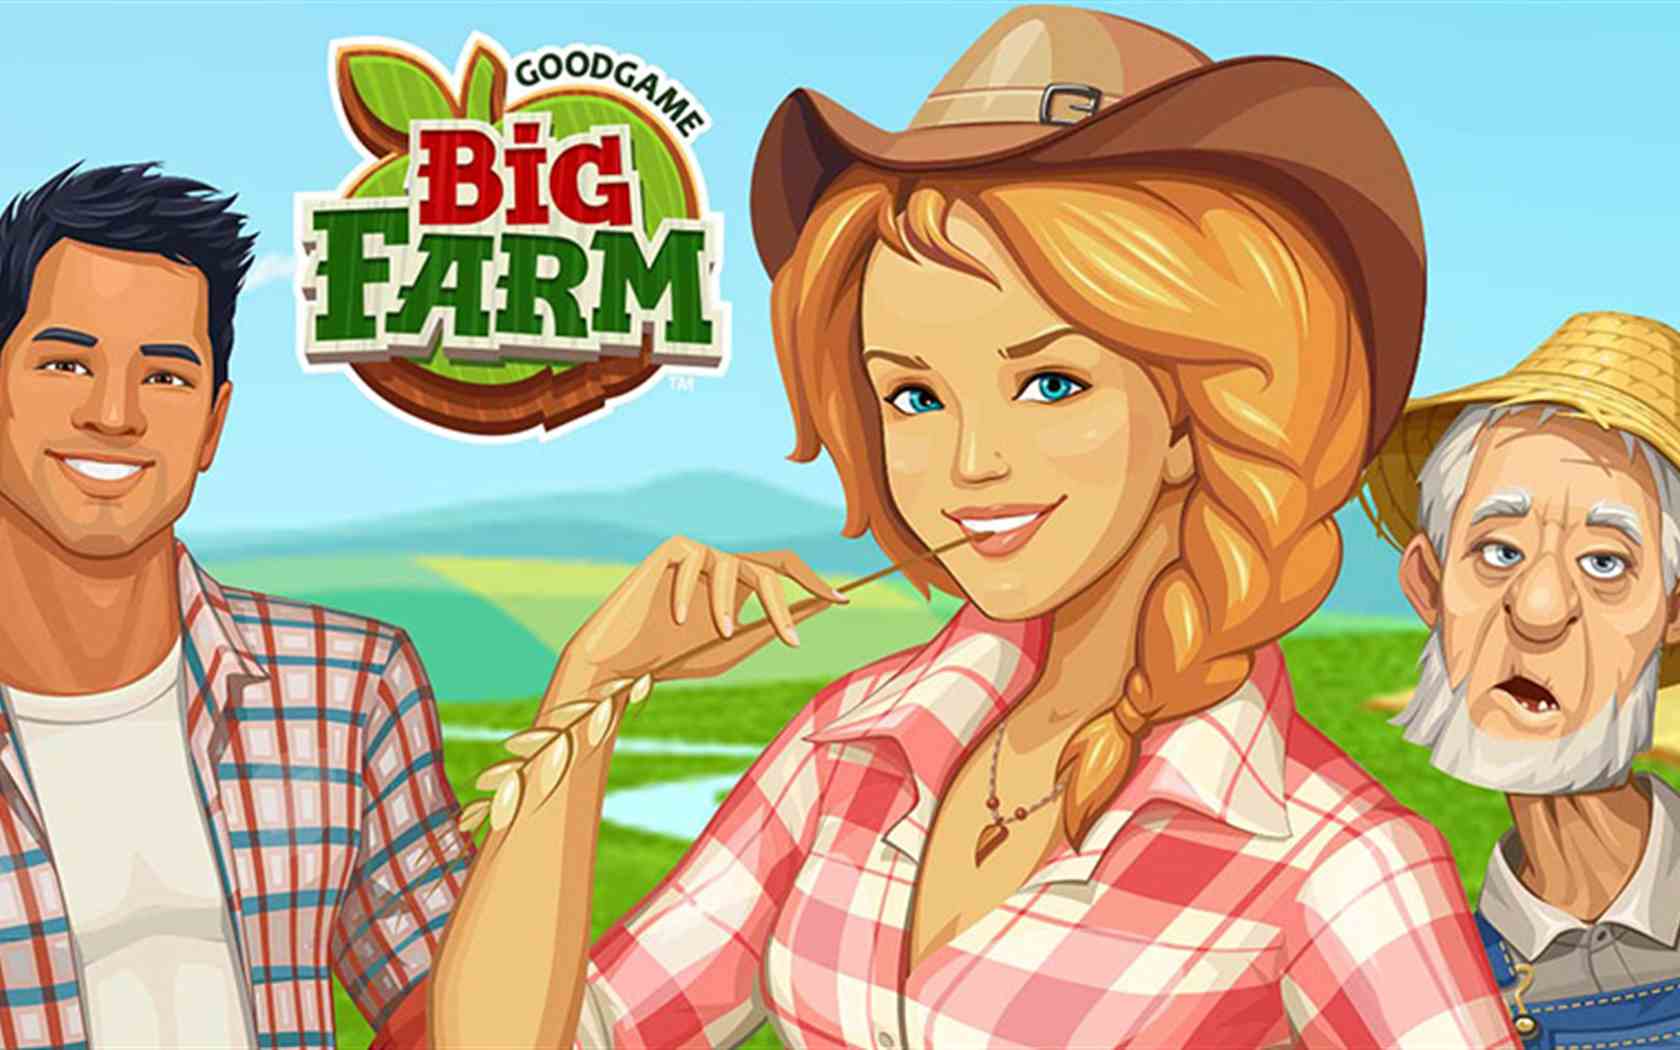 Goodgame Big Farm (Farmer) - Nejlepší farmářská hra internetu!